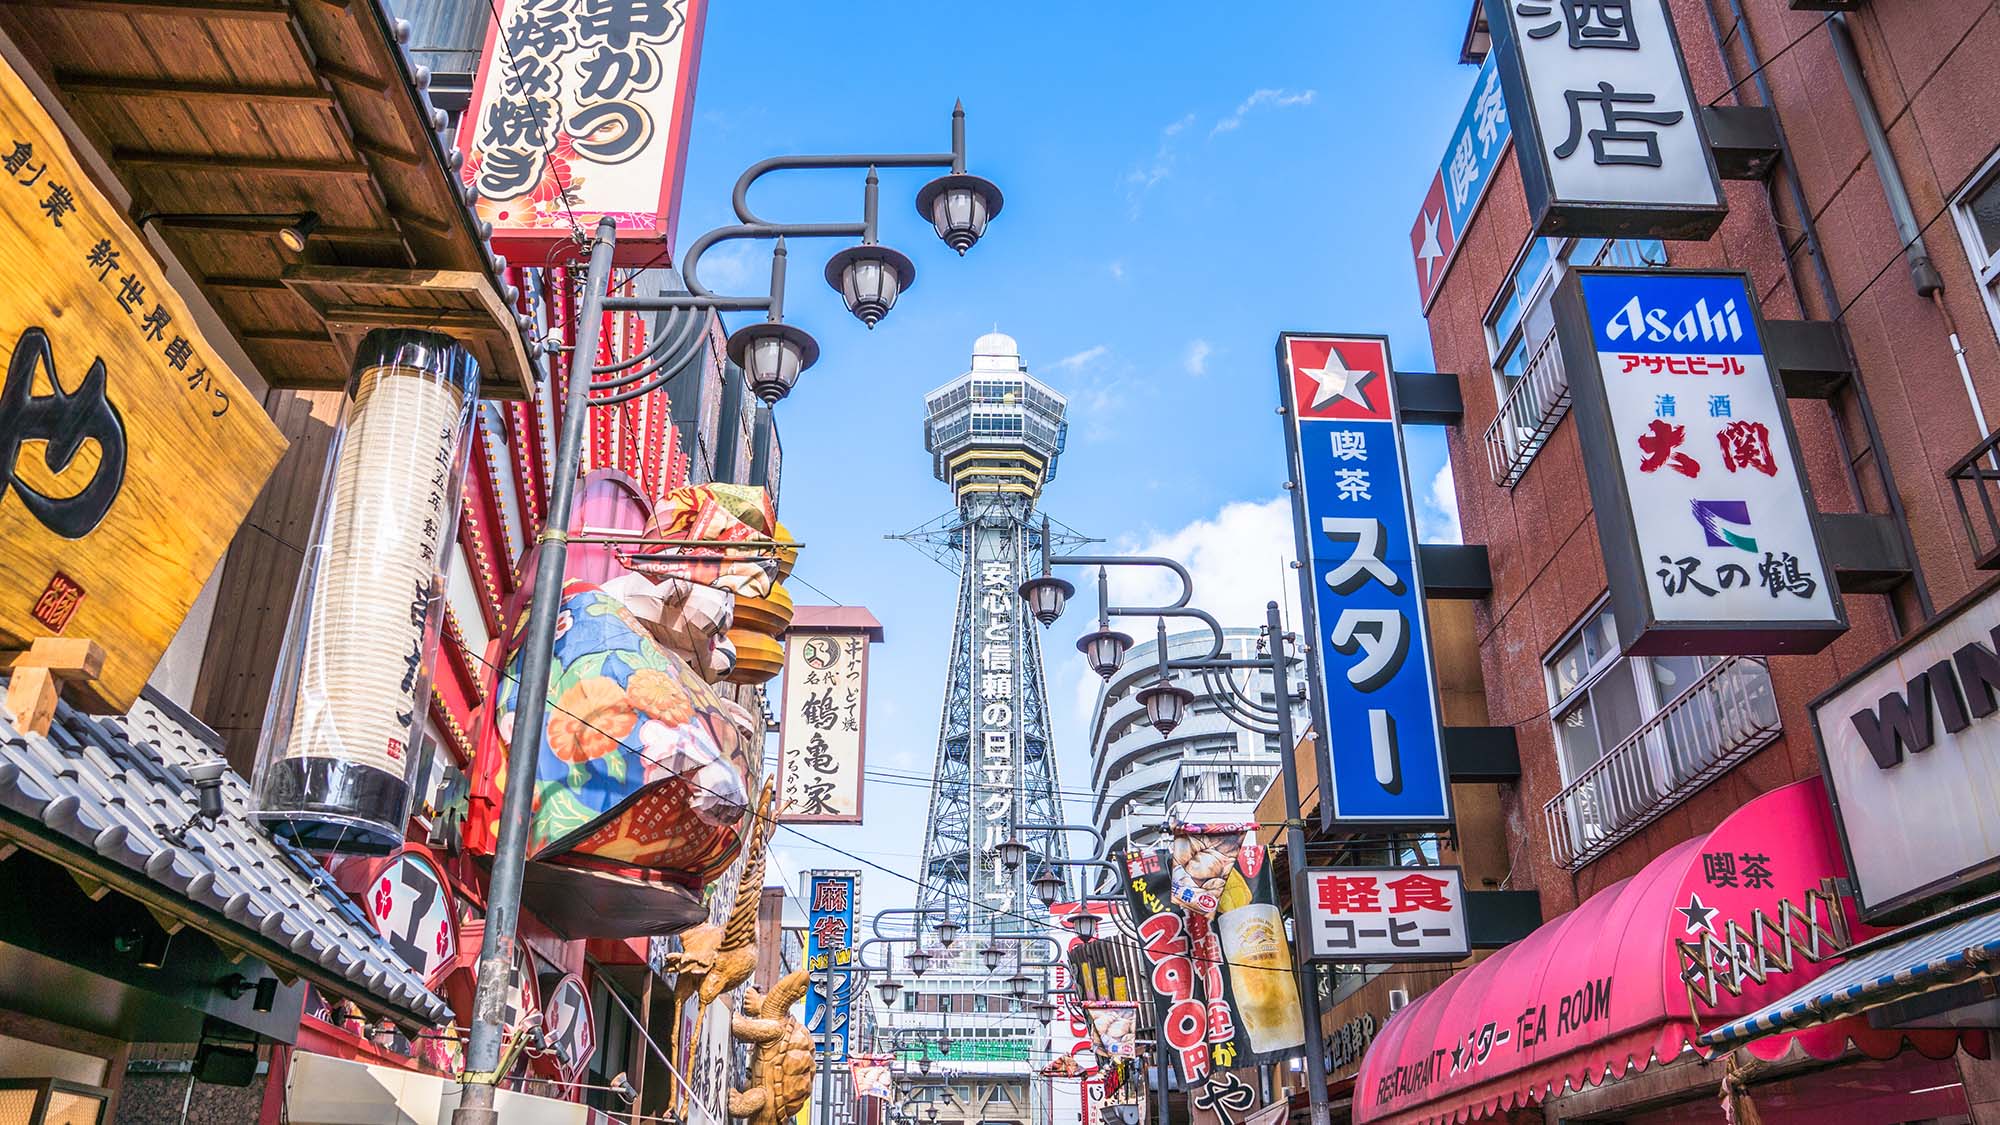 ・【大阪観光】新世界は、大きなフグ提灯の看板や通天閣で有名な大阪の人気観光スポット